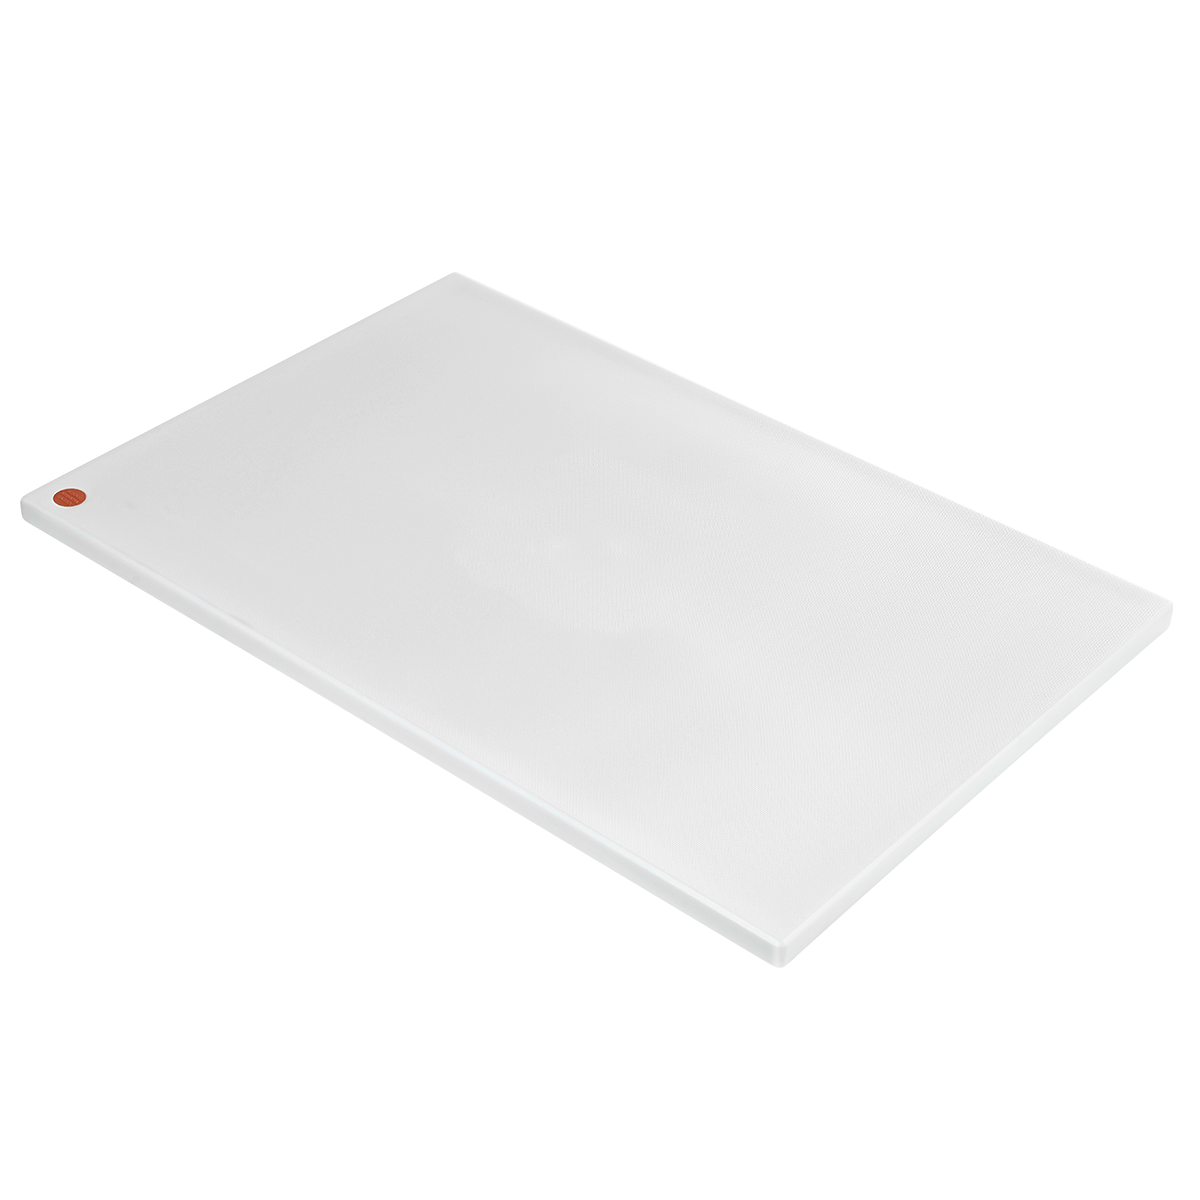 Plastic Cutting Board - Haccp-Compliant - Rectangle - White - 18 x 24 - 1  Count Box